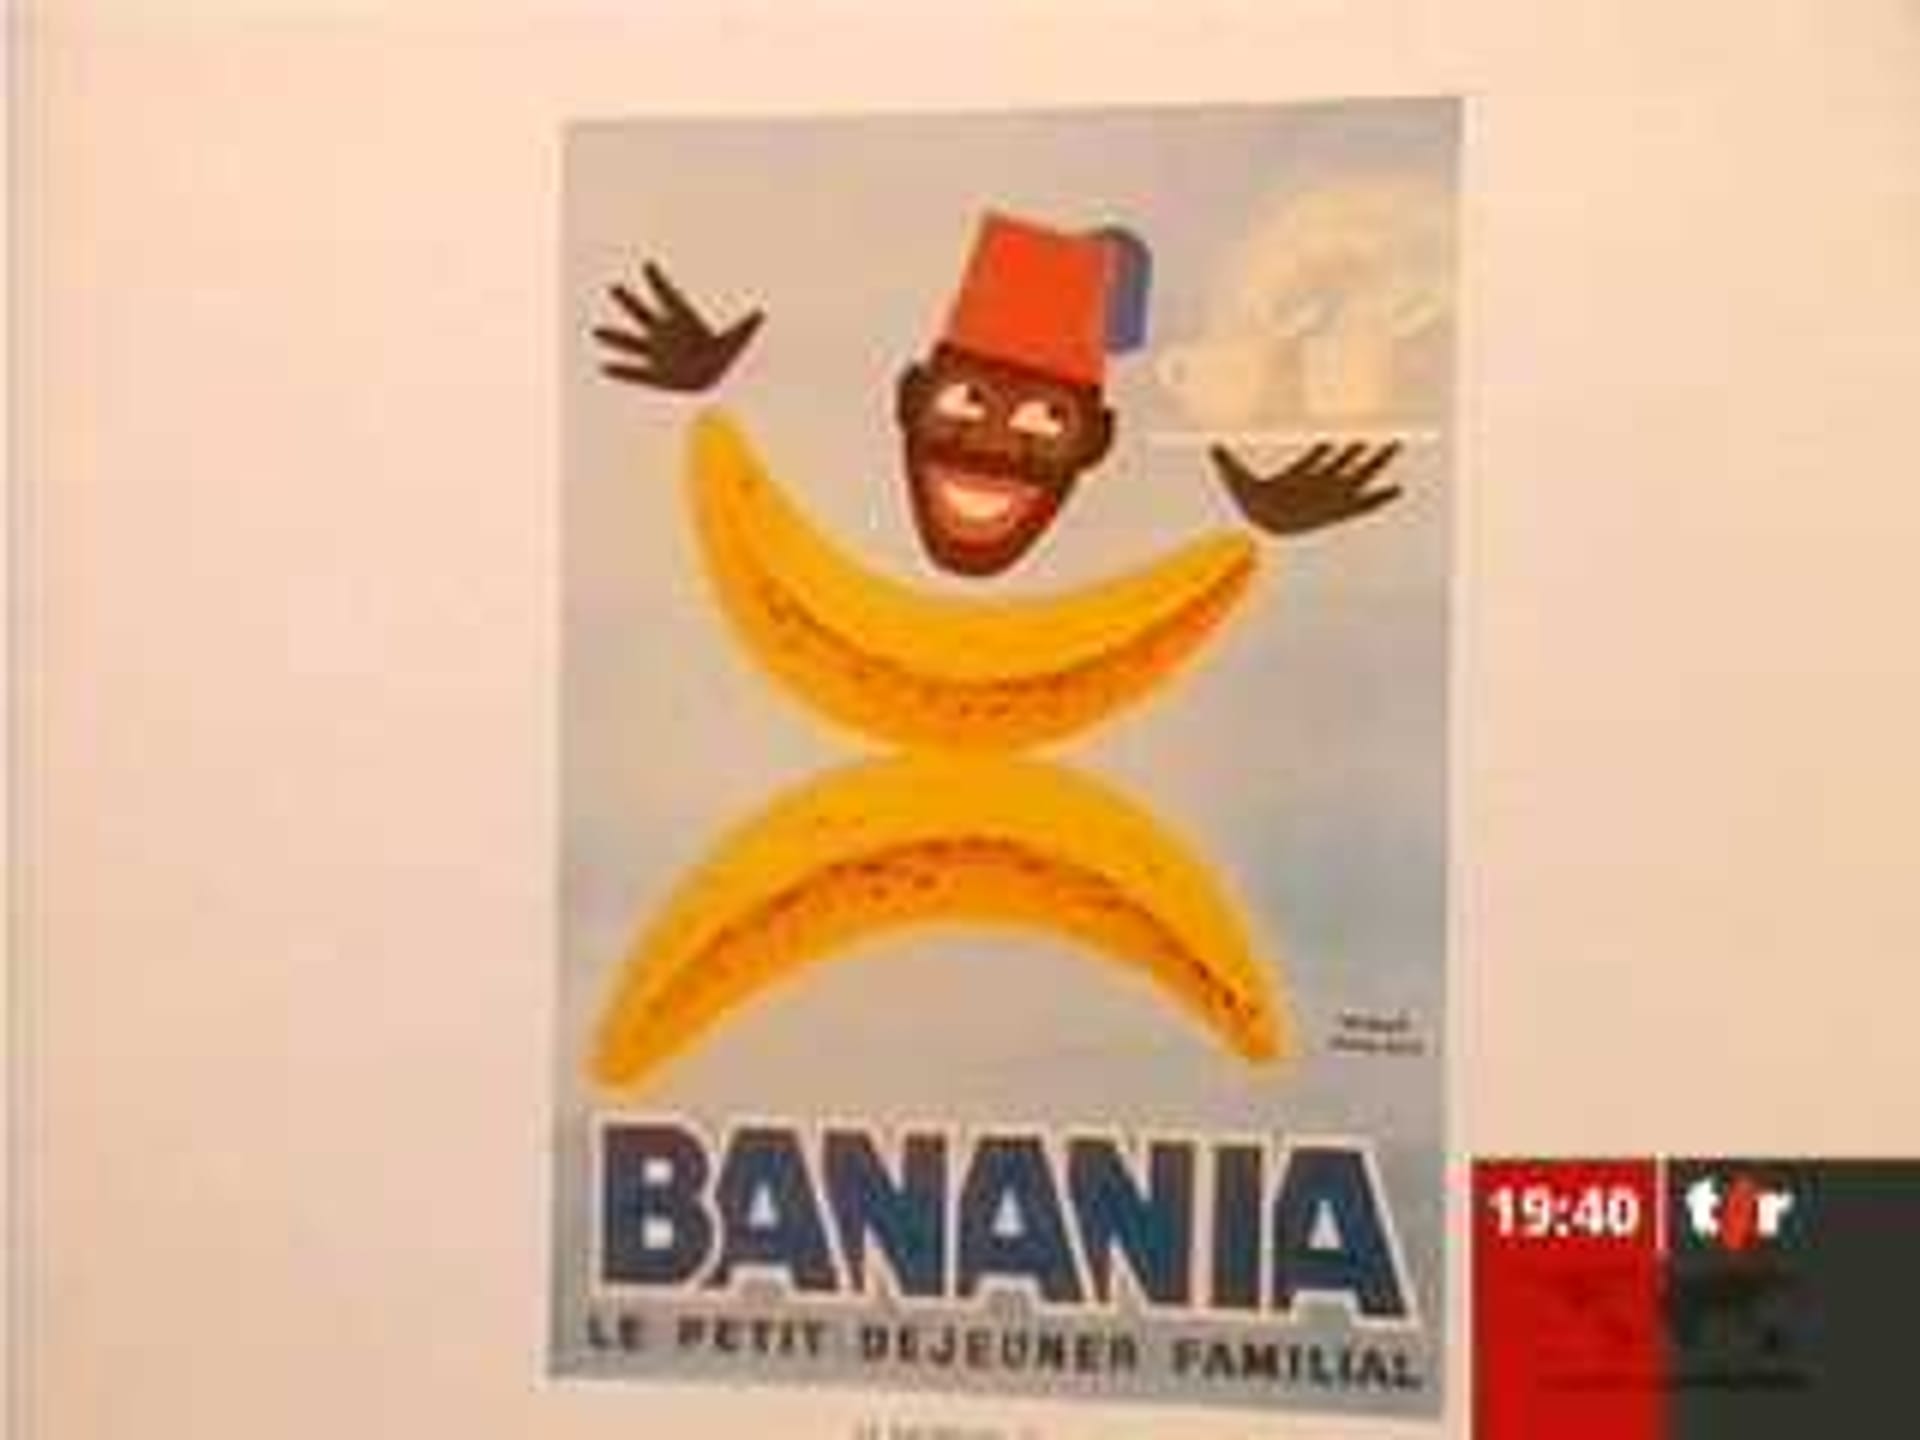 19h30 - Publicité et racisme: la marque Banania a été radiée - Play RTS